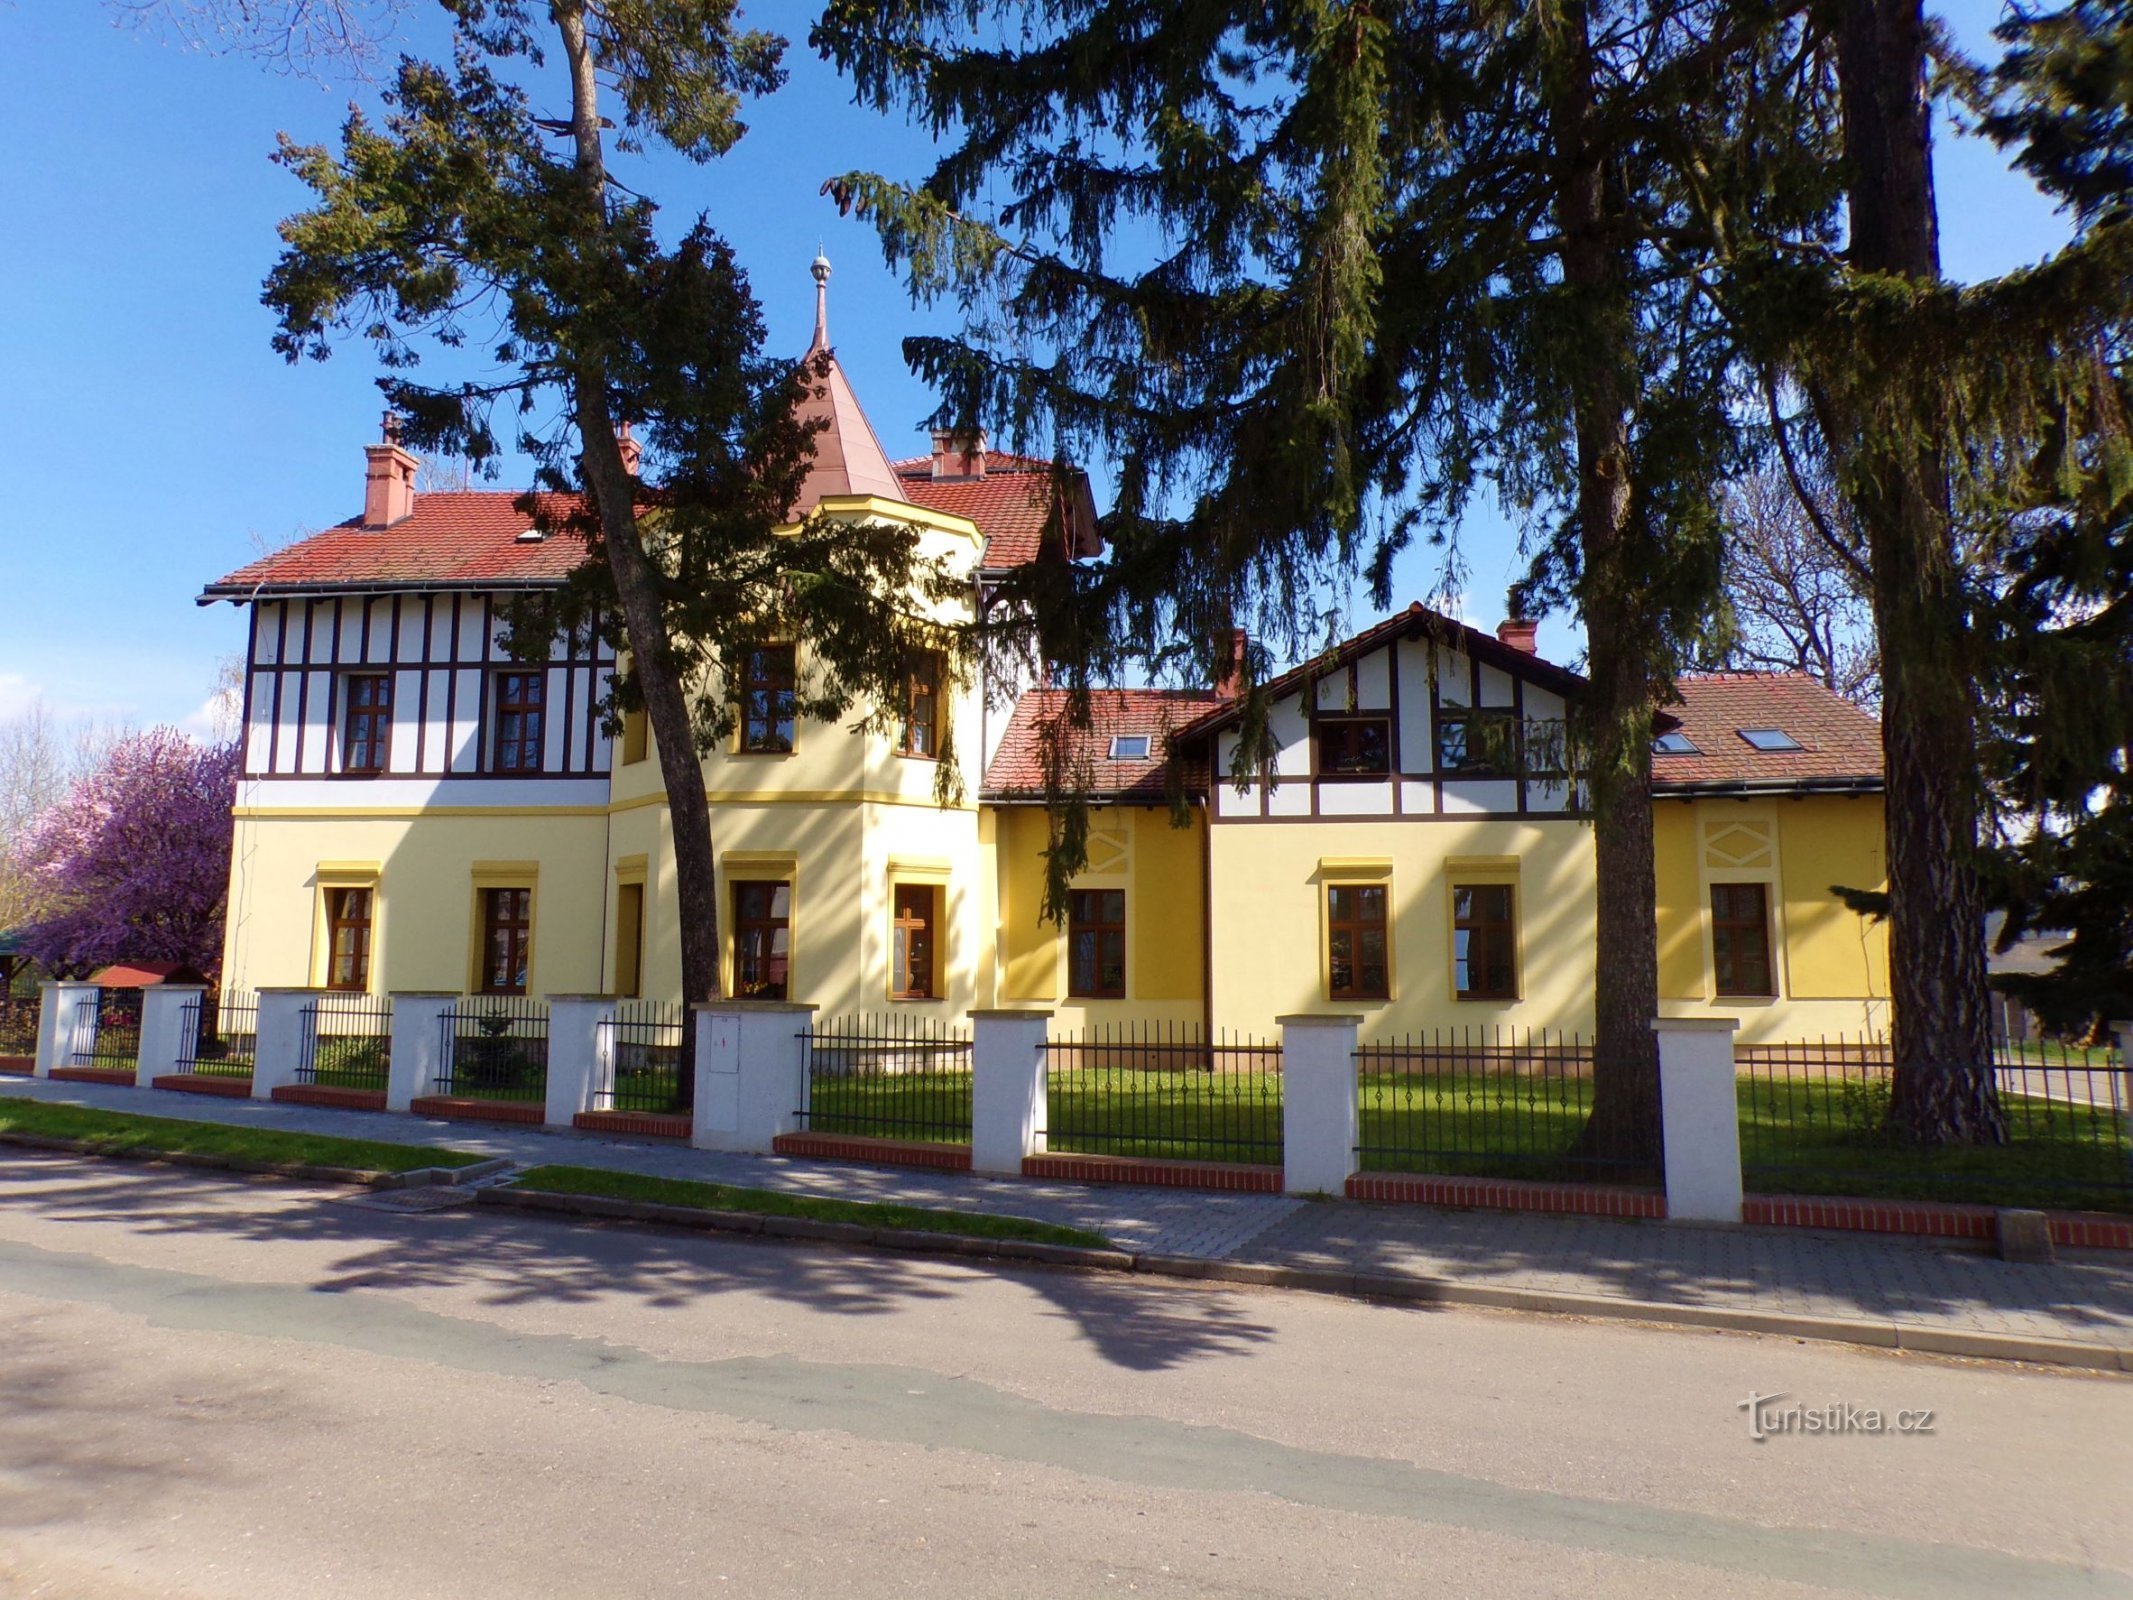 Malmannova vila br. 63 (Skřivany, 30.4.2021.)